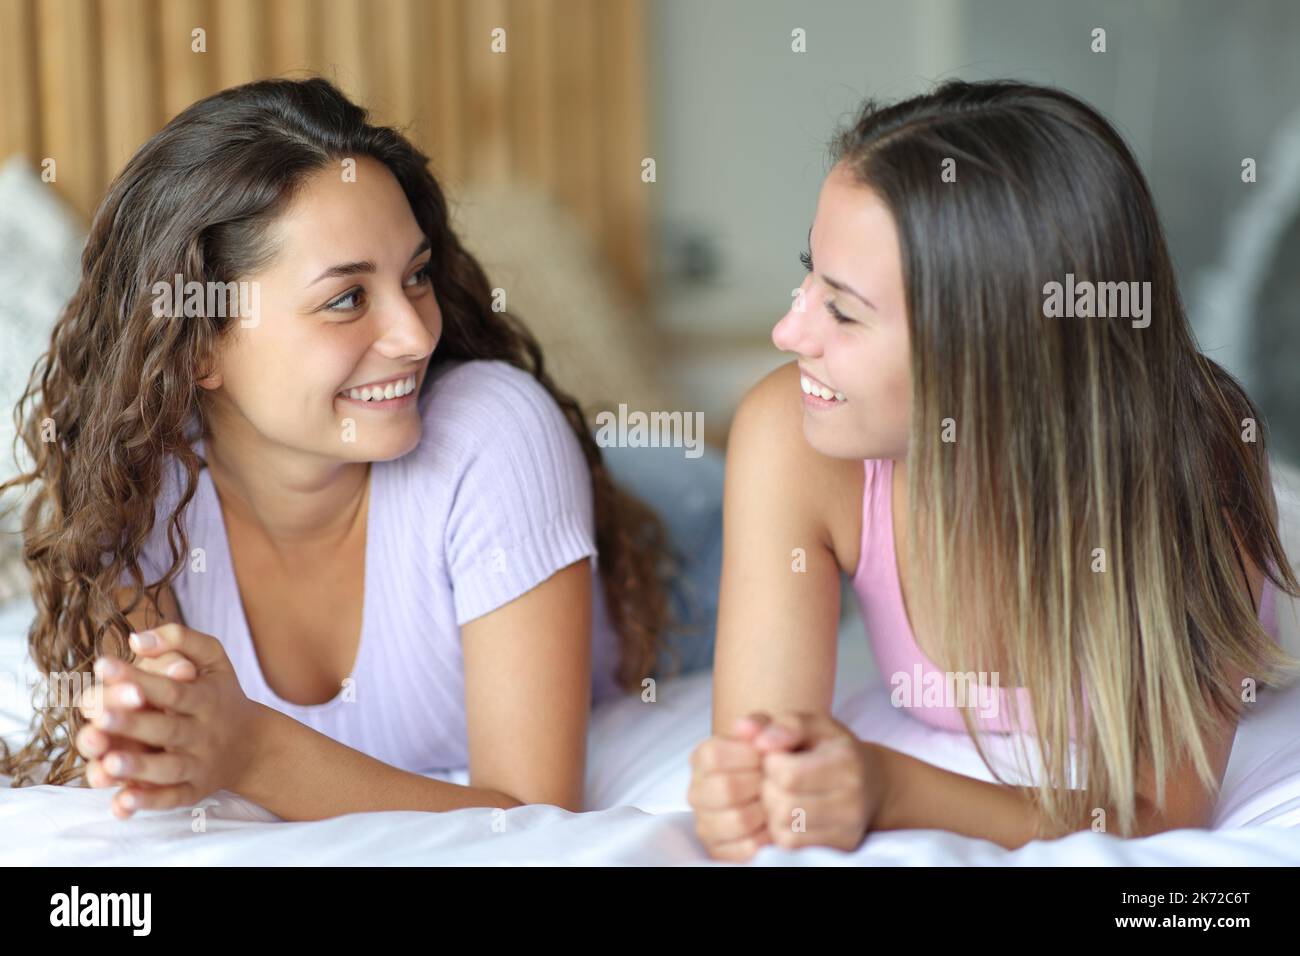 Zwei glückliche Freunde, die sich im Schlafzimmer auf dem Bett unterhielten Stockfoto